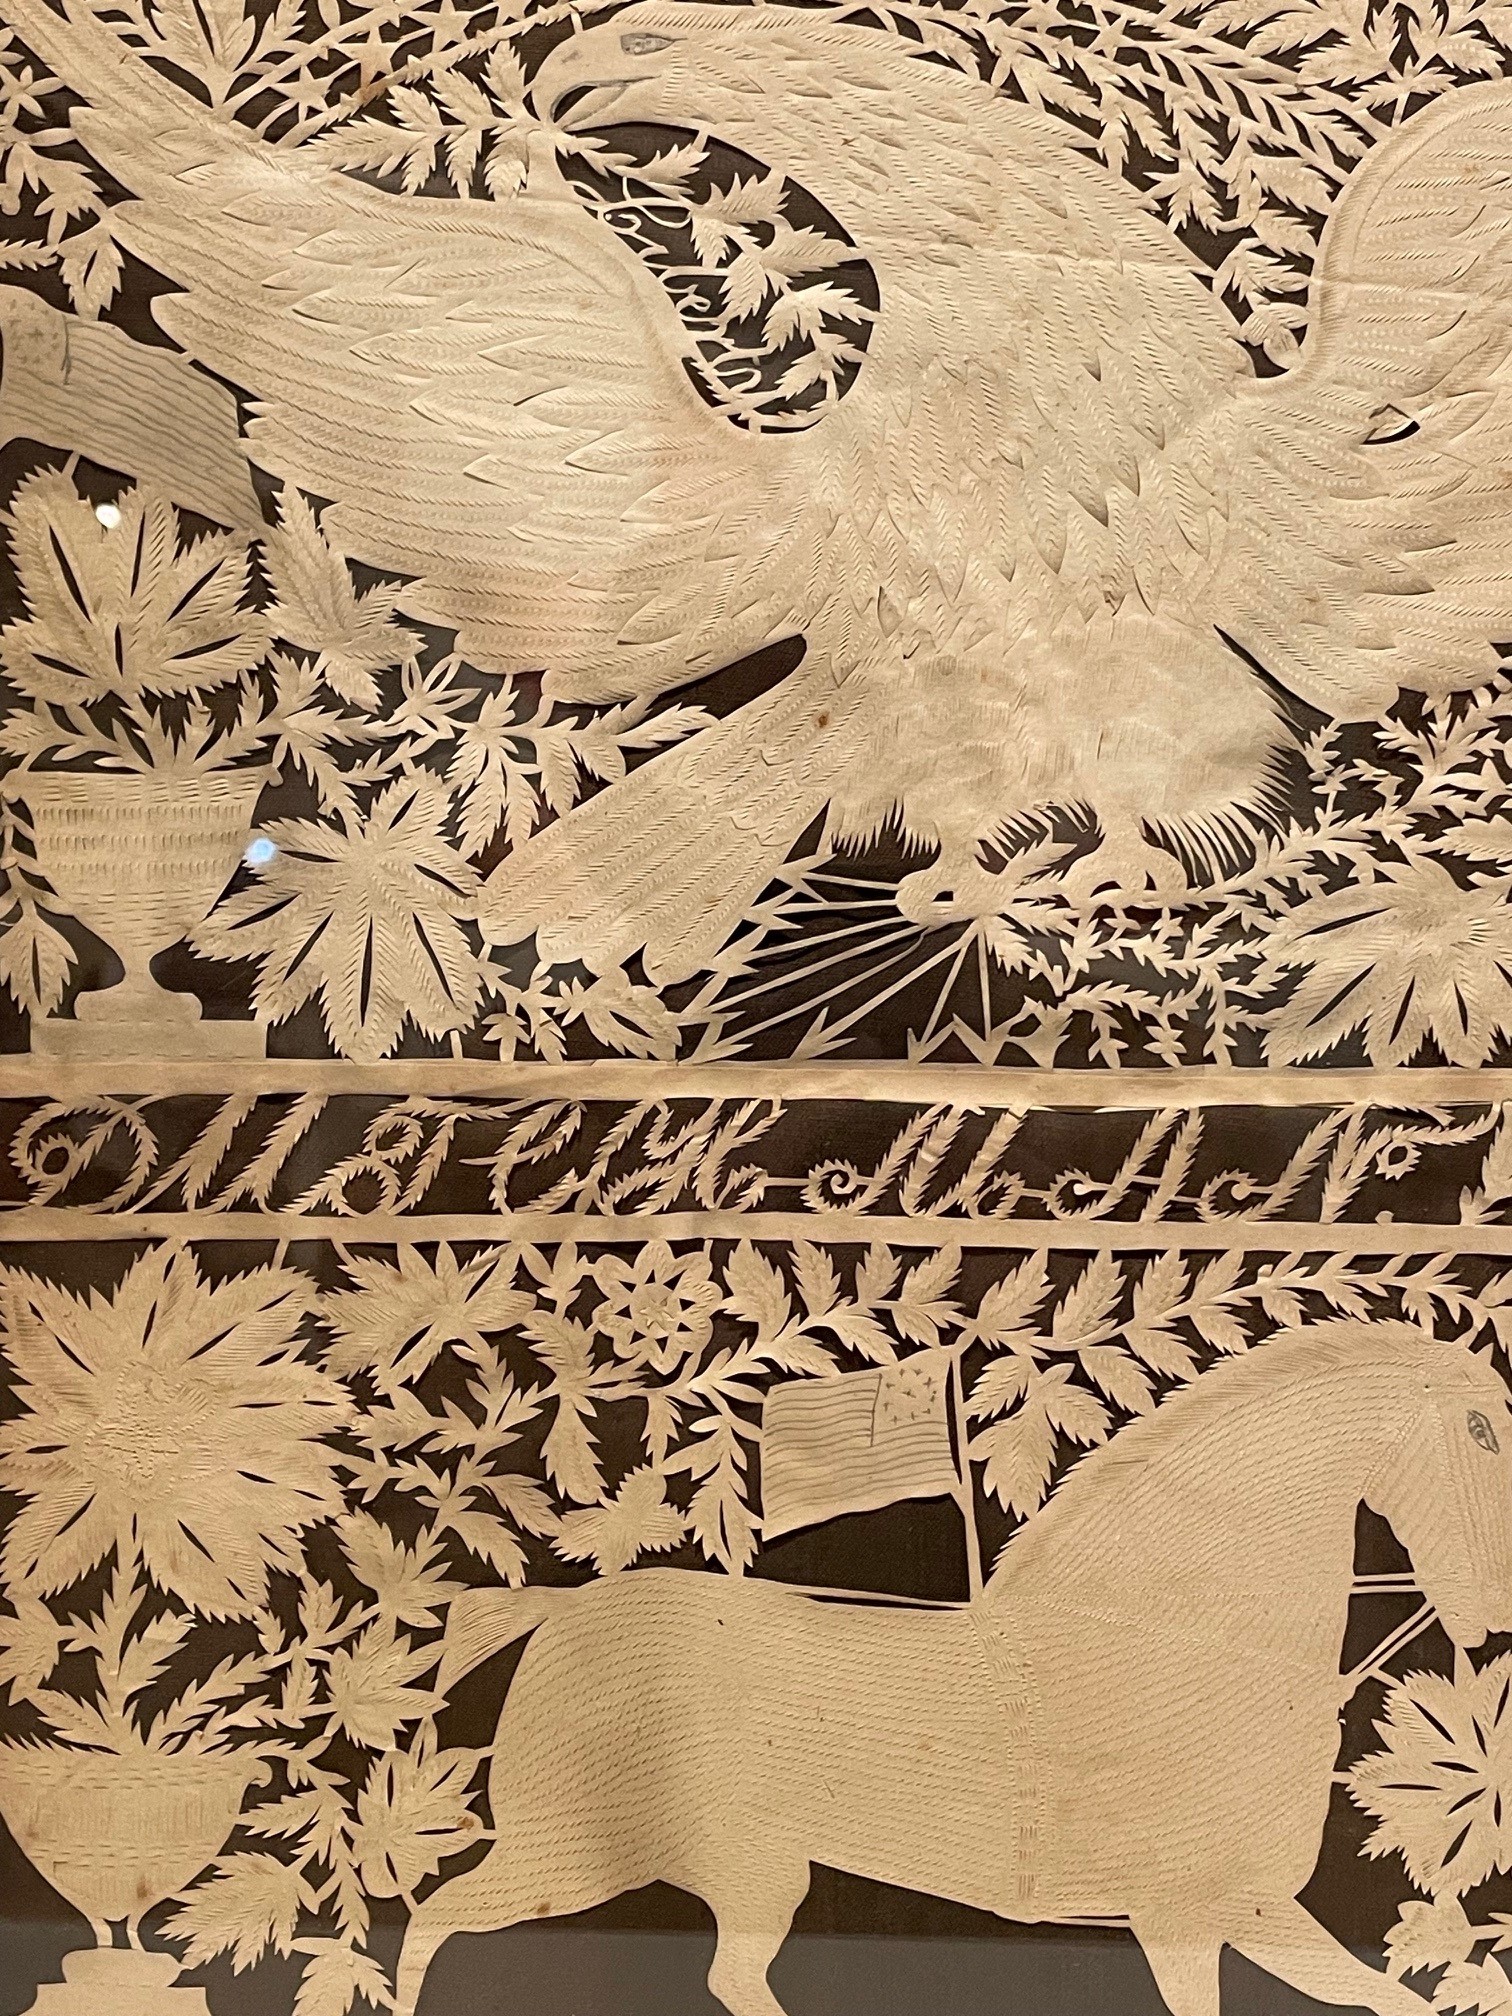 American antique animal papercut rel=